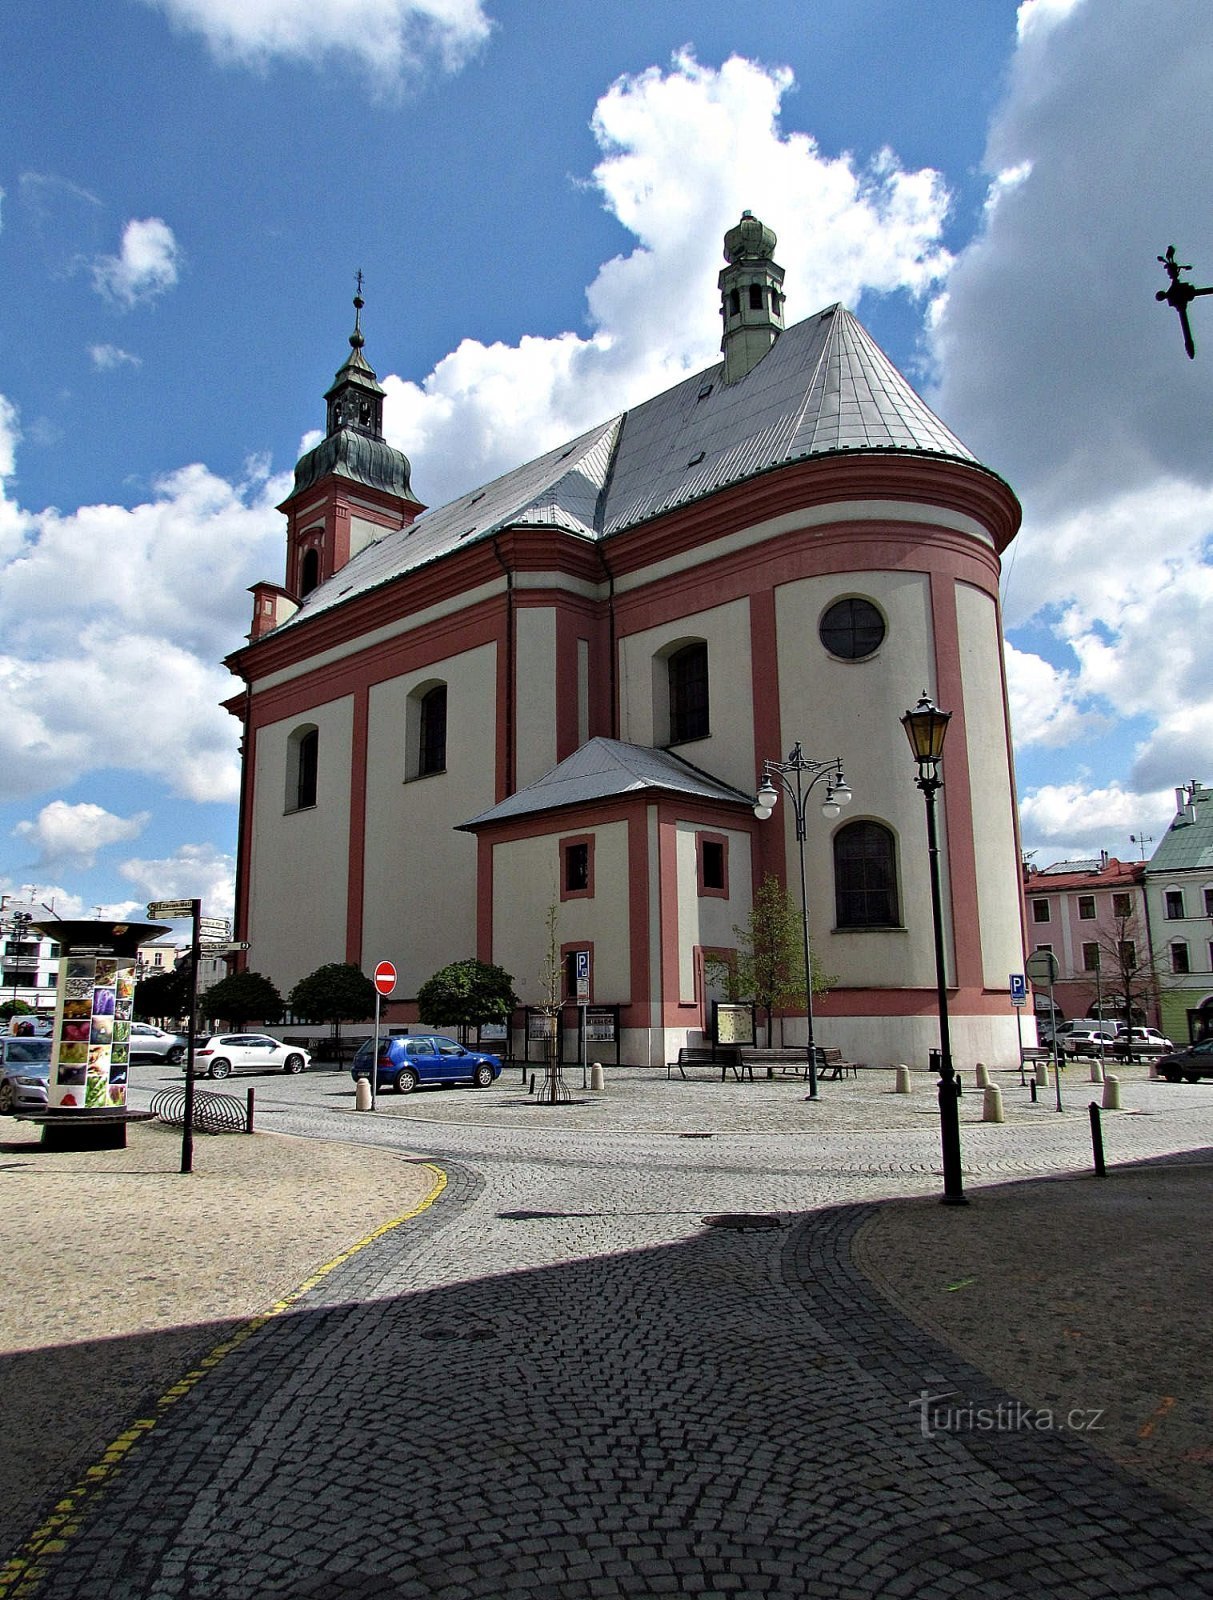 Nhà thờ Hranicky nơi chặt đầu của Thánh John the Baptist